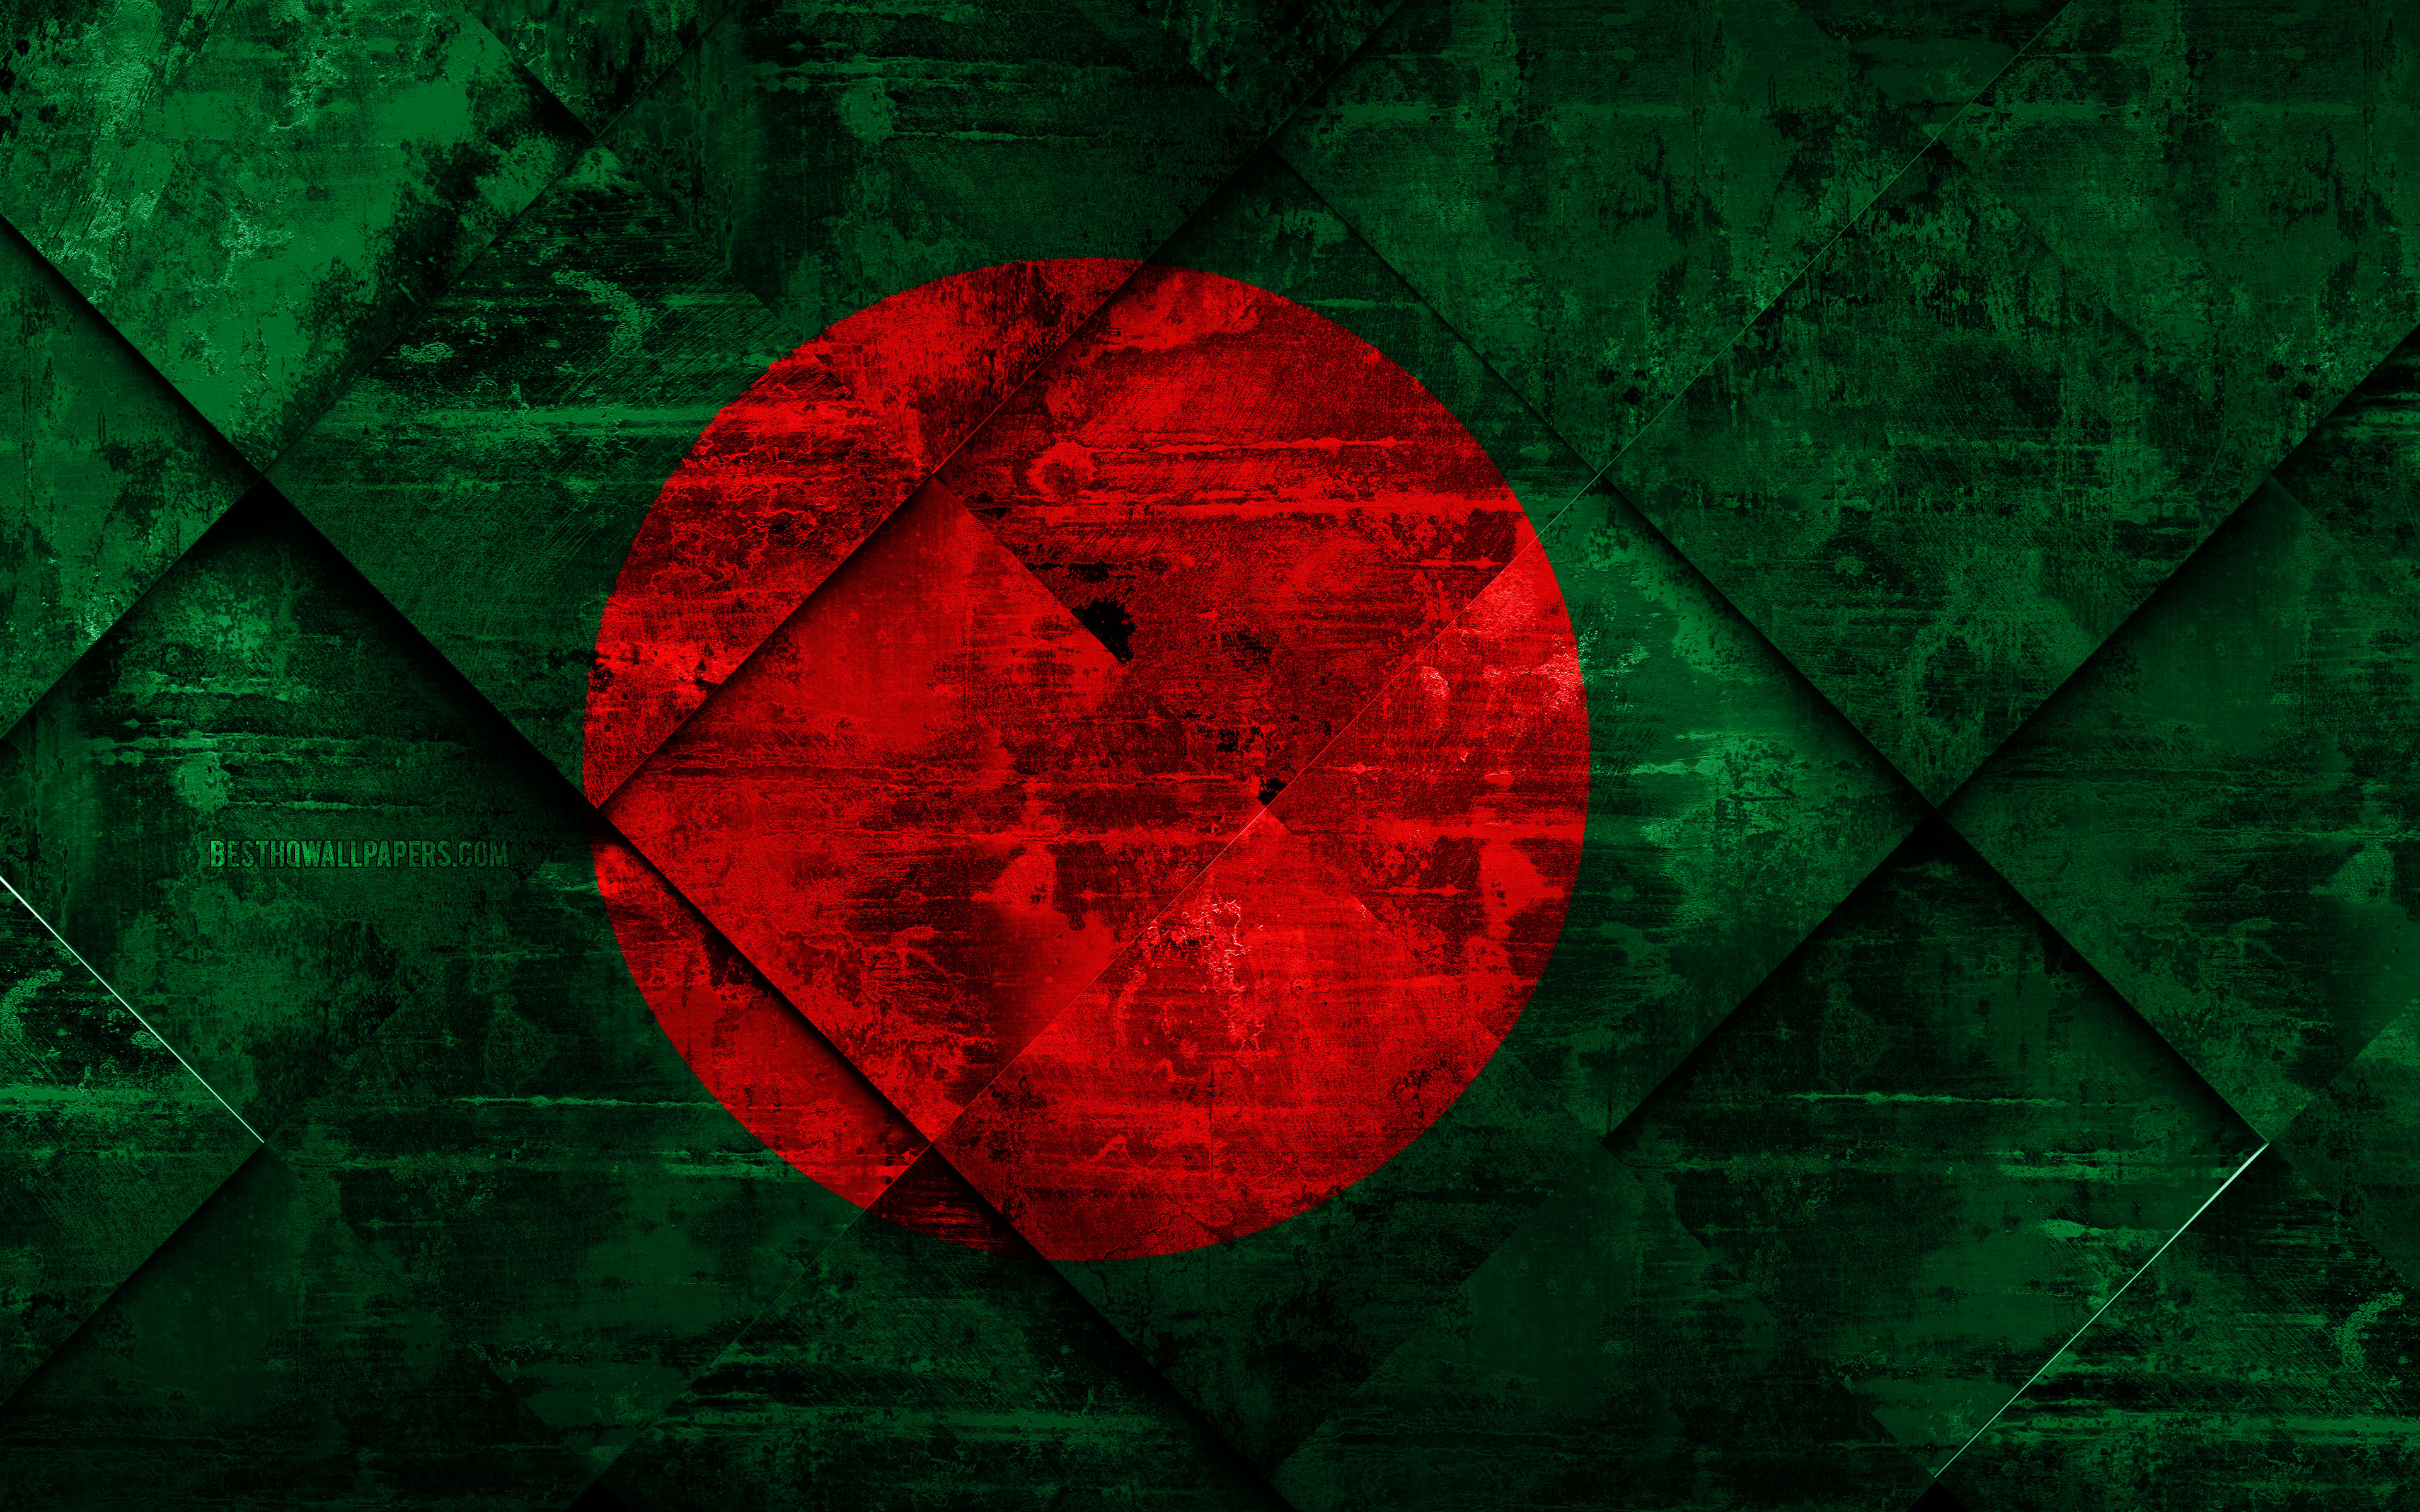 Bangladesh Flag Wallpapers